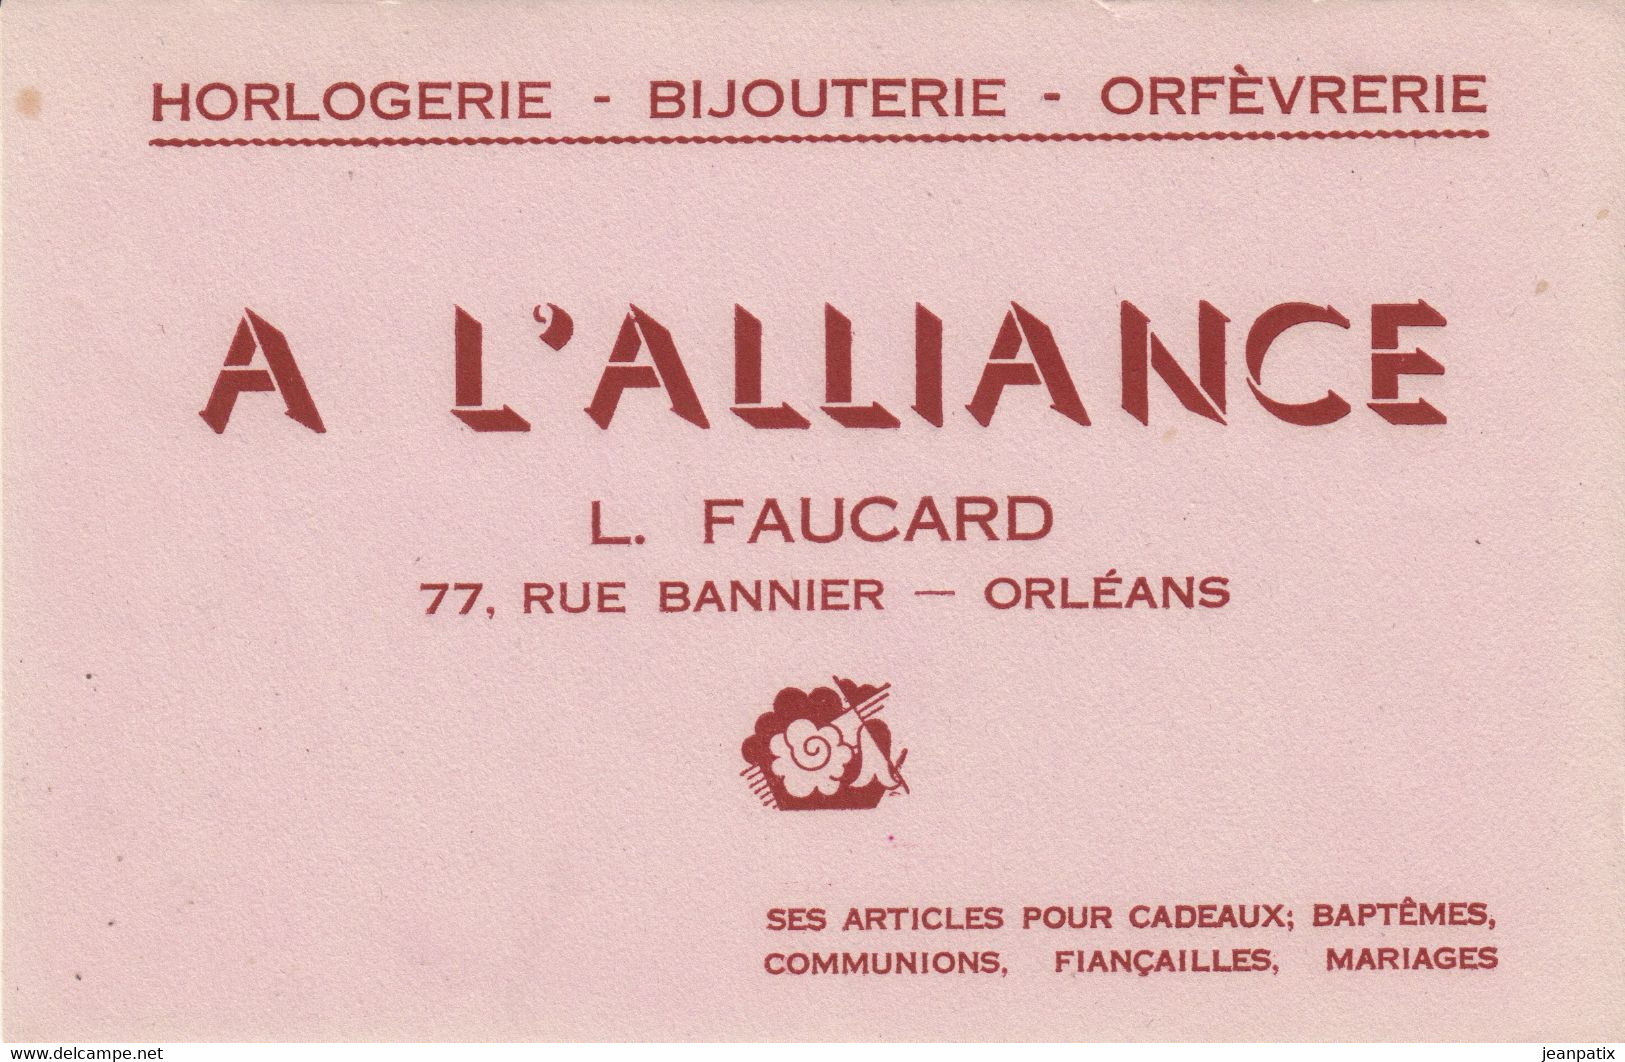 BUVARD & BLOTTER - Horlogerie Bijouterie Orfèvrerie - A L'ALLIANCE - FAUCARD -  77, Rue Bannier - Orléans - Produits Pharmaceutiques